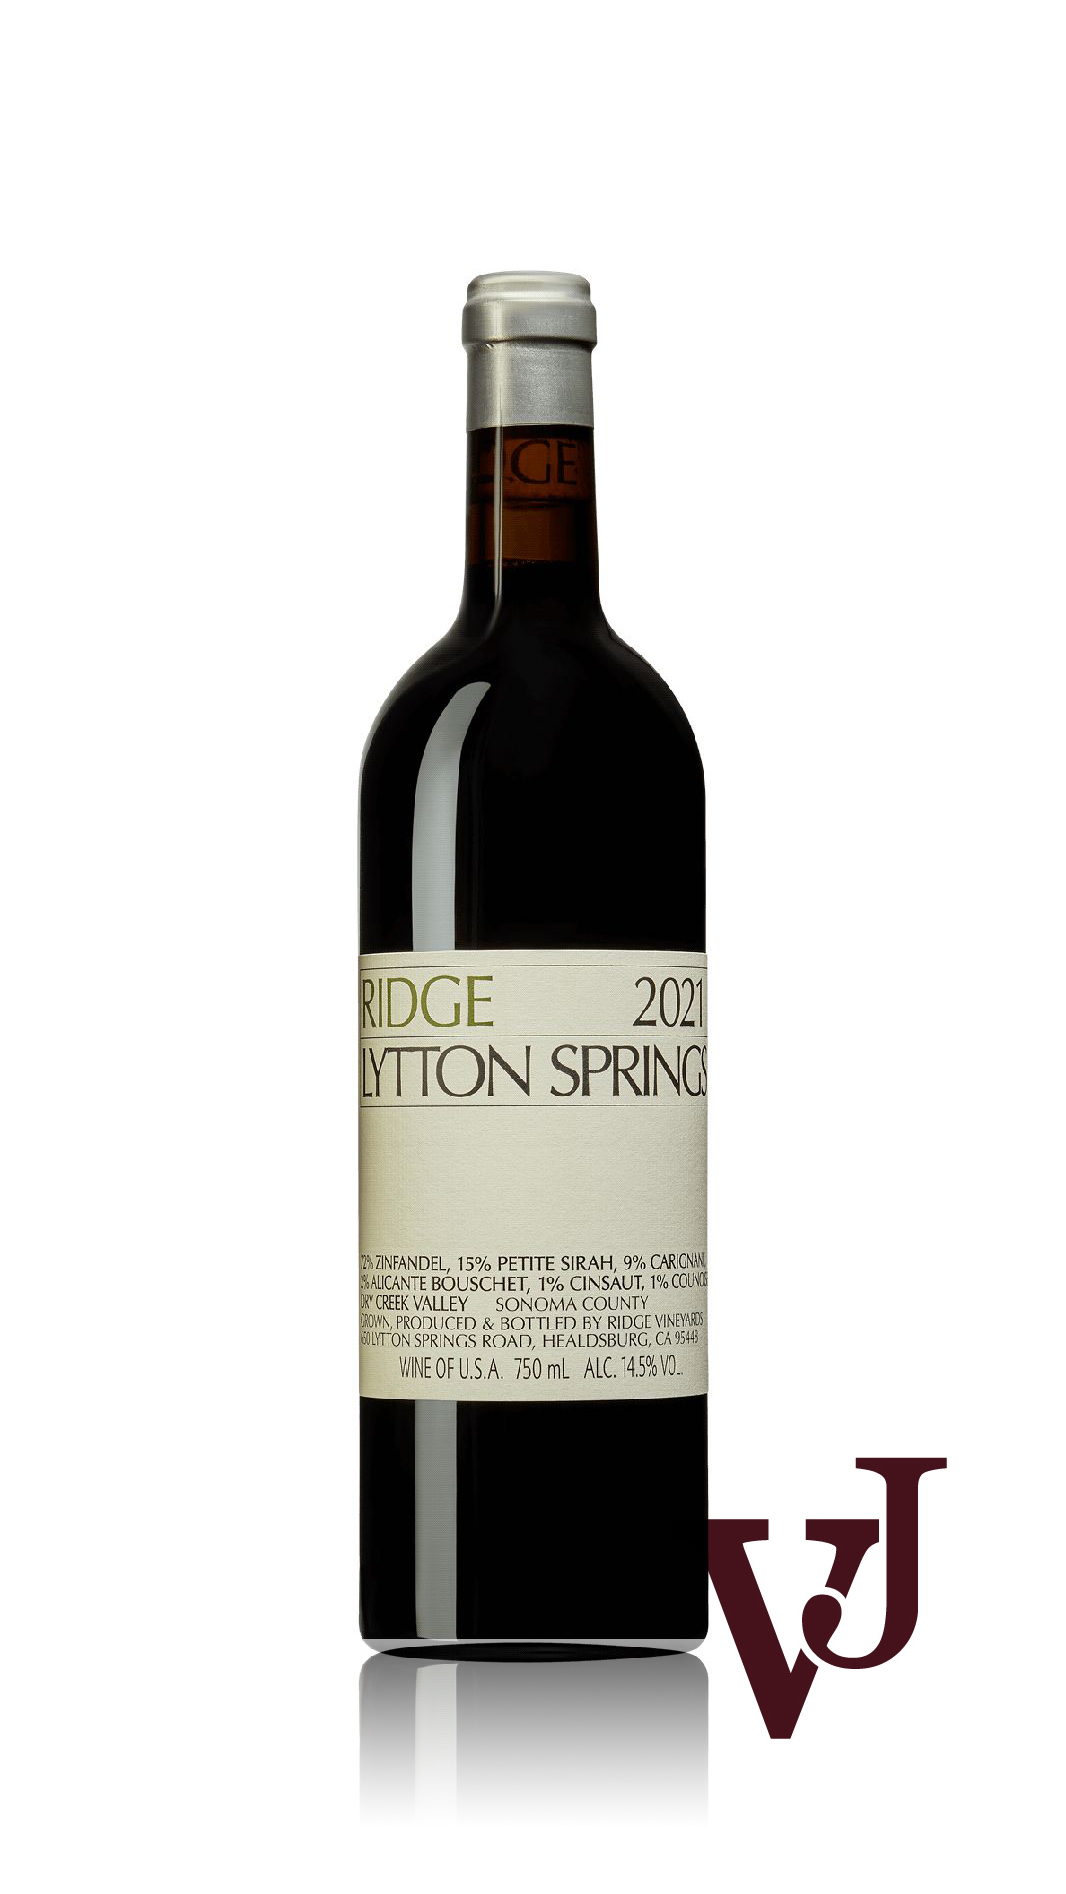 Rött Vin - Ridge Lytton Springs 2021 artikel nummer 9322901 från producenten Ridge Vineyards från USA